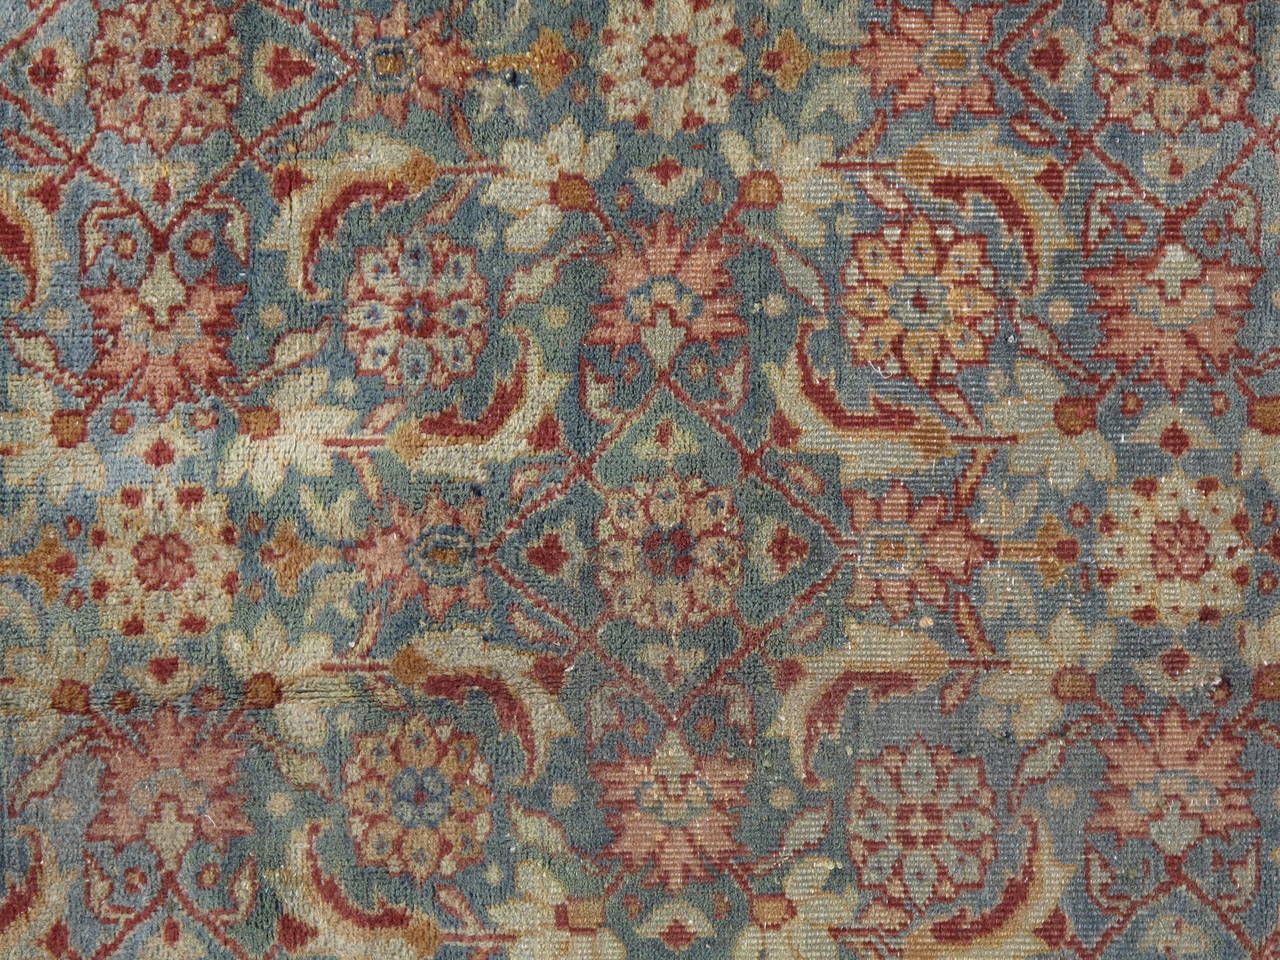 Agra-Teppiche sind heute die begehrtesten aller indischen Teppiche des 19. Agra-Teppiche waren extrem gut gefertigte, strapazierfähige Teppiche und gelten als die besten indischen Teppiche. Dieser Teppich ist eine Nachbildung des späten 20.